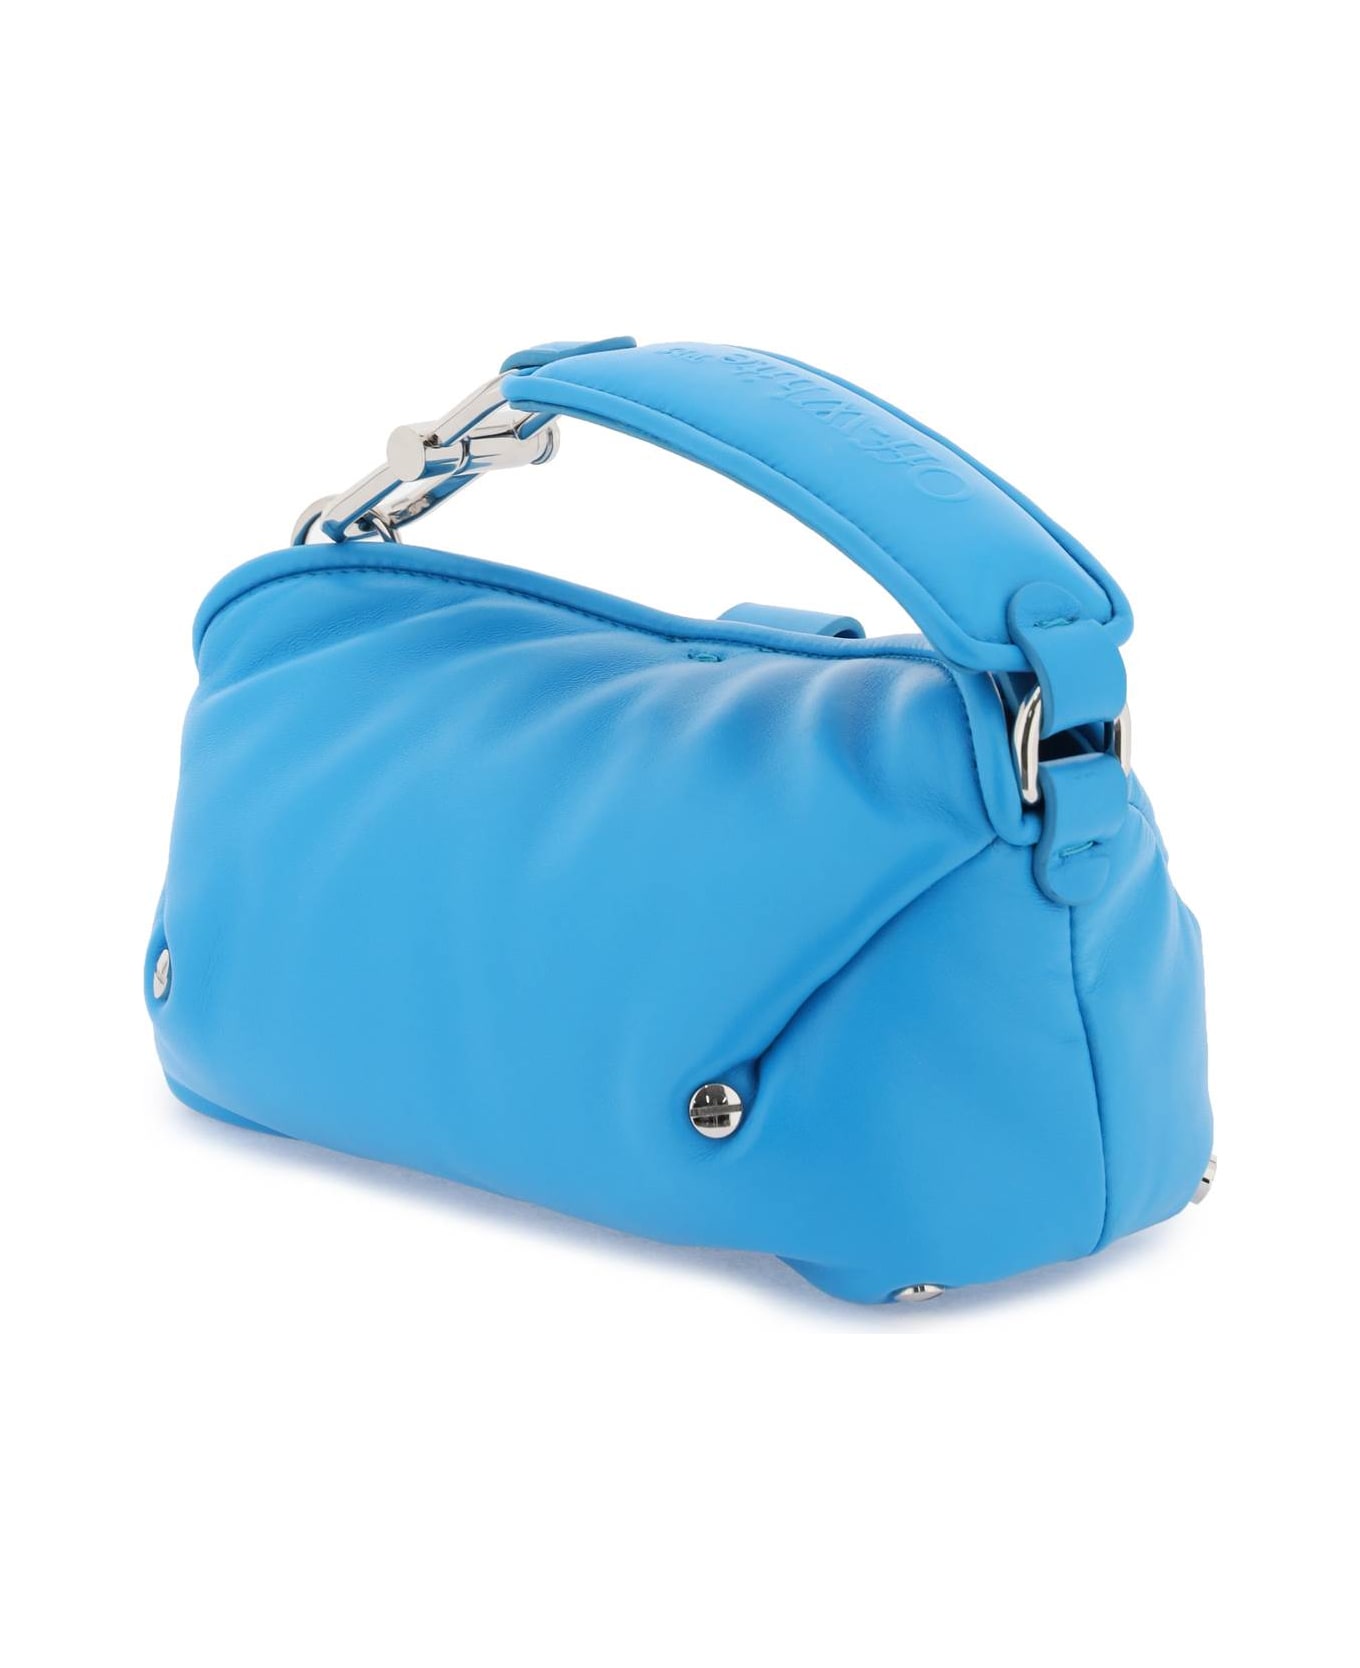 Off-White San Diego Handbag - LIGHT BLUE (Light blue)